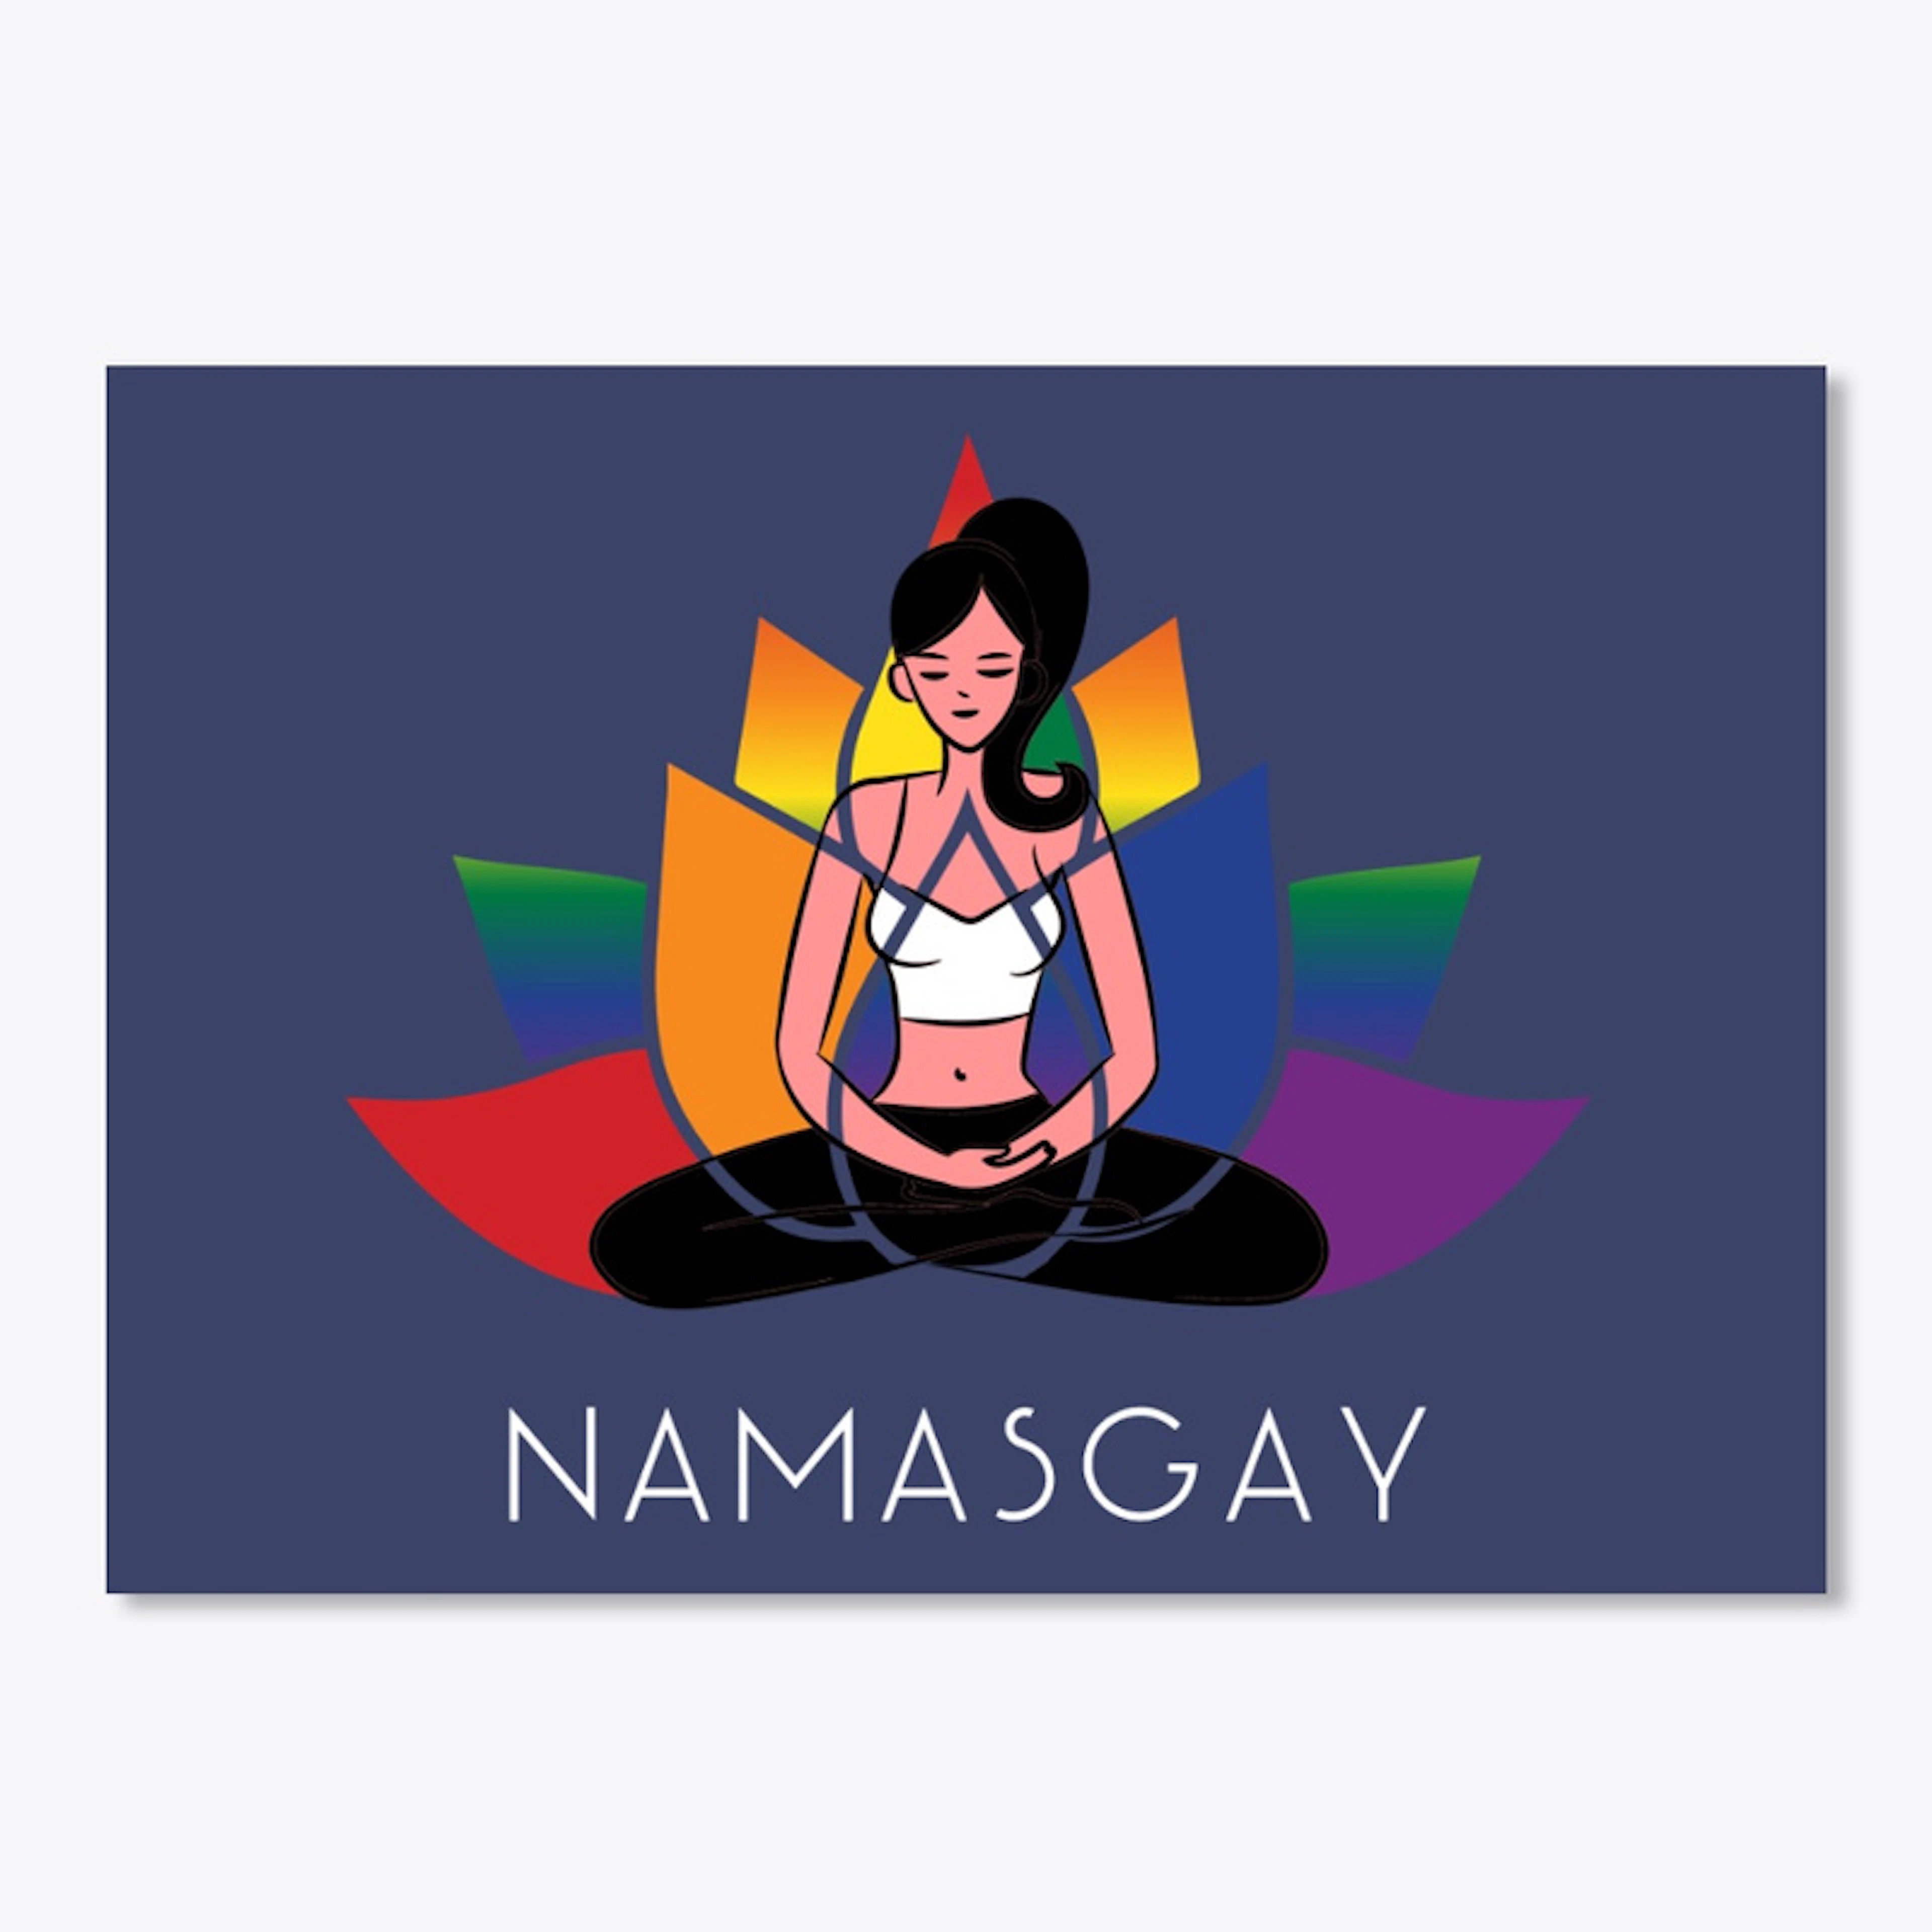 Namasgay